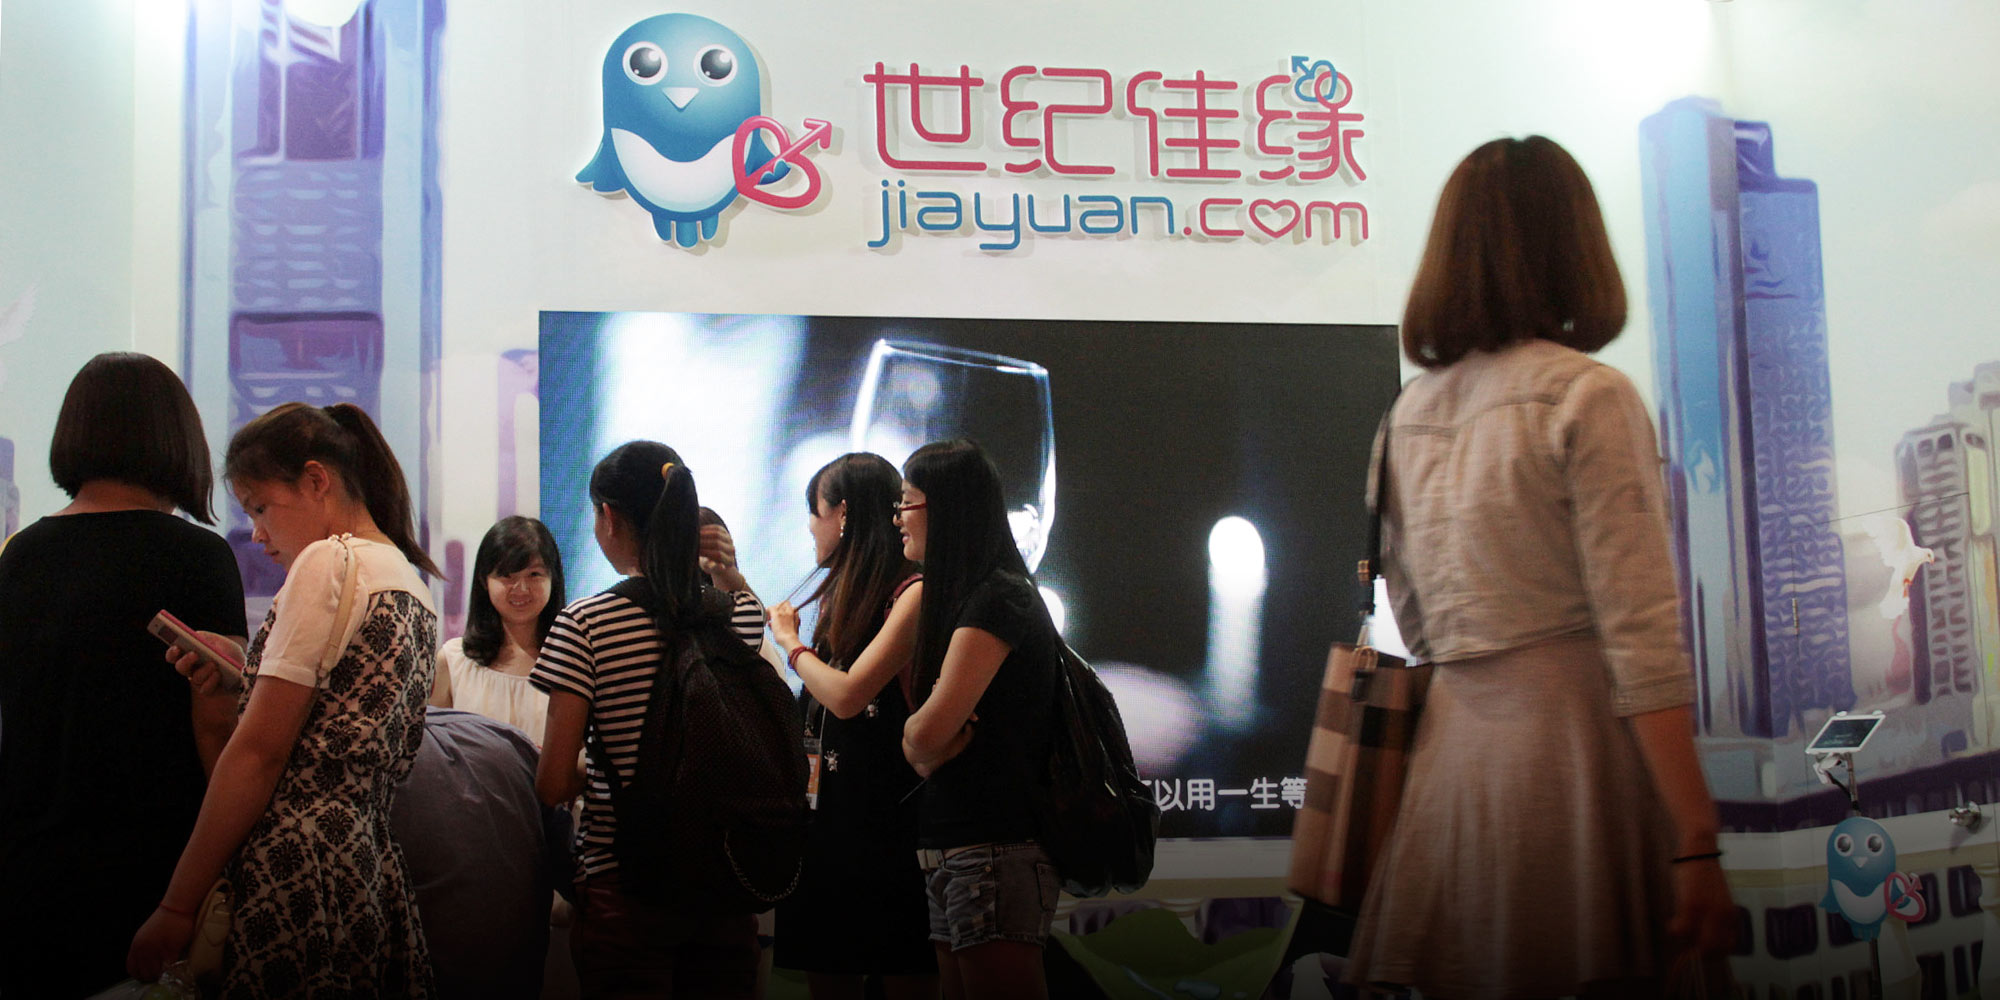 Jiayuan dating app